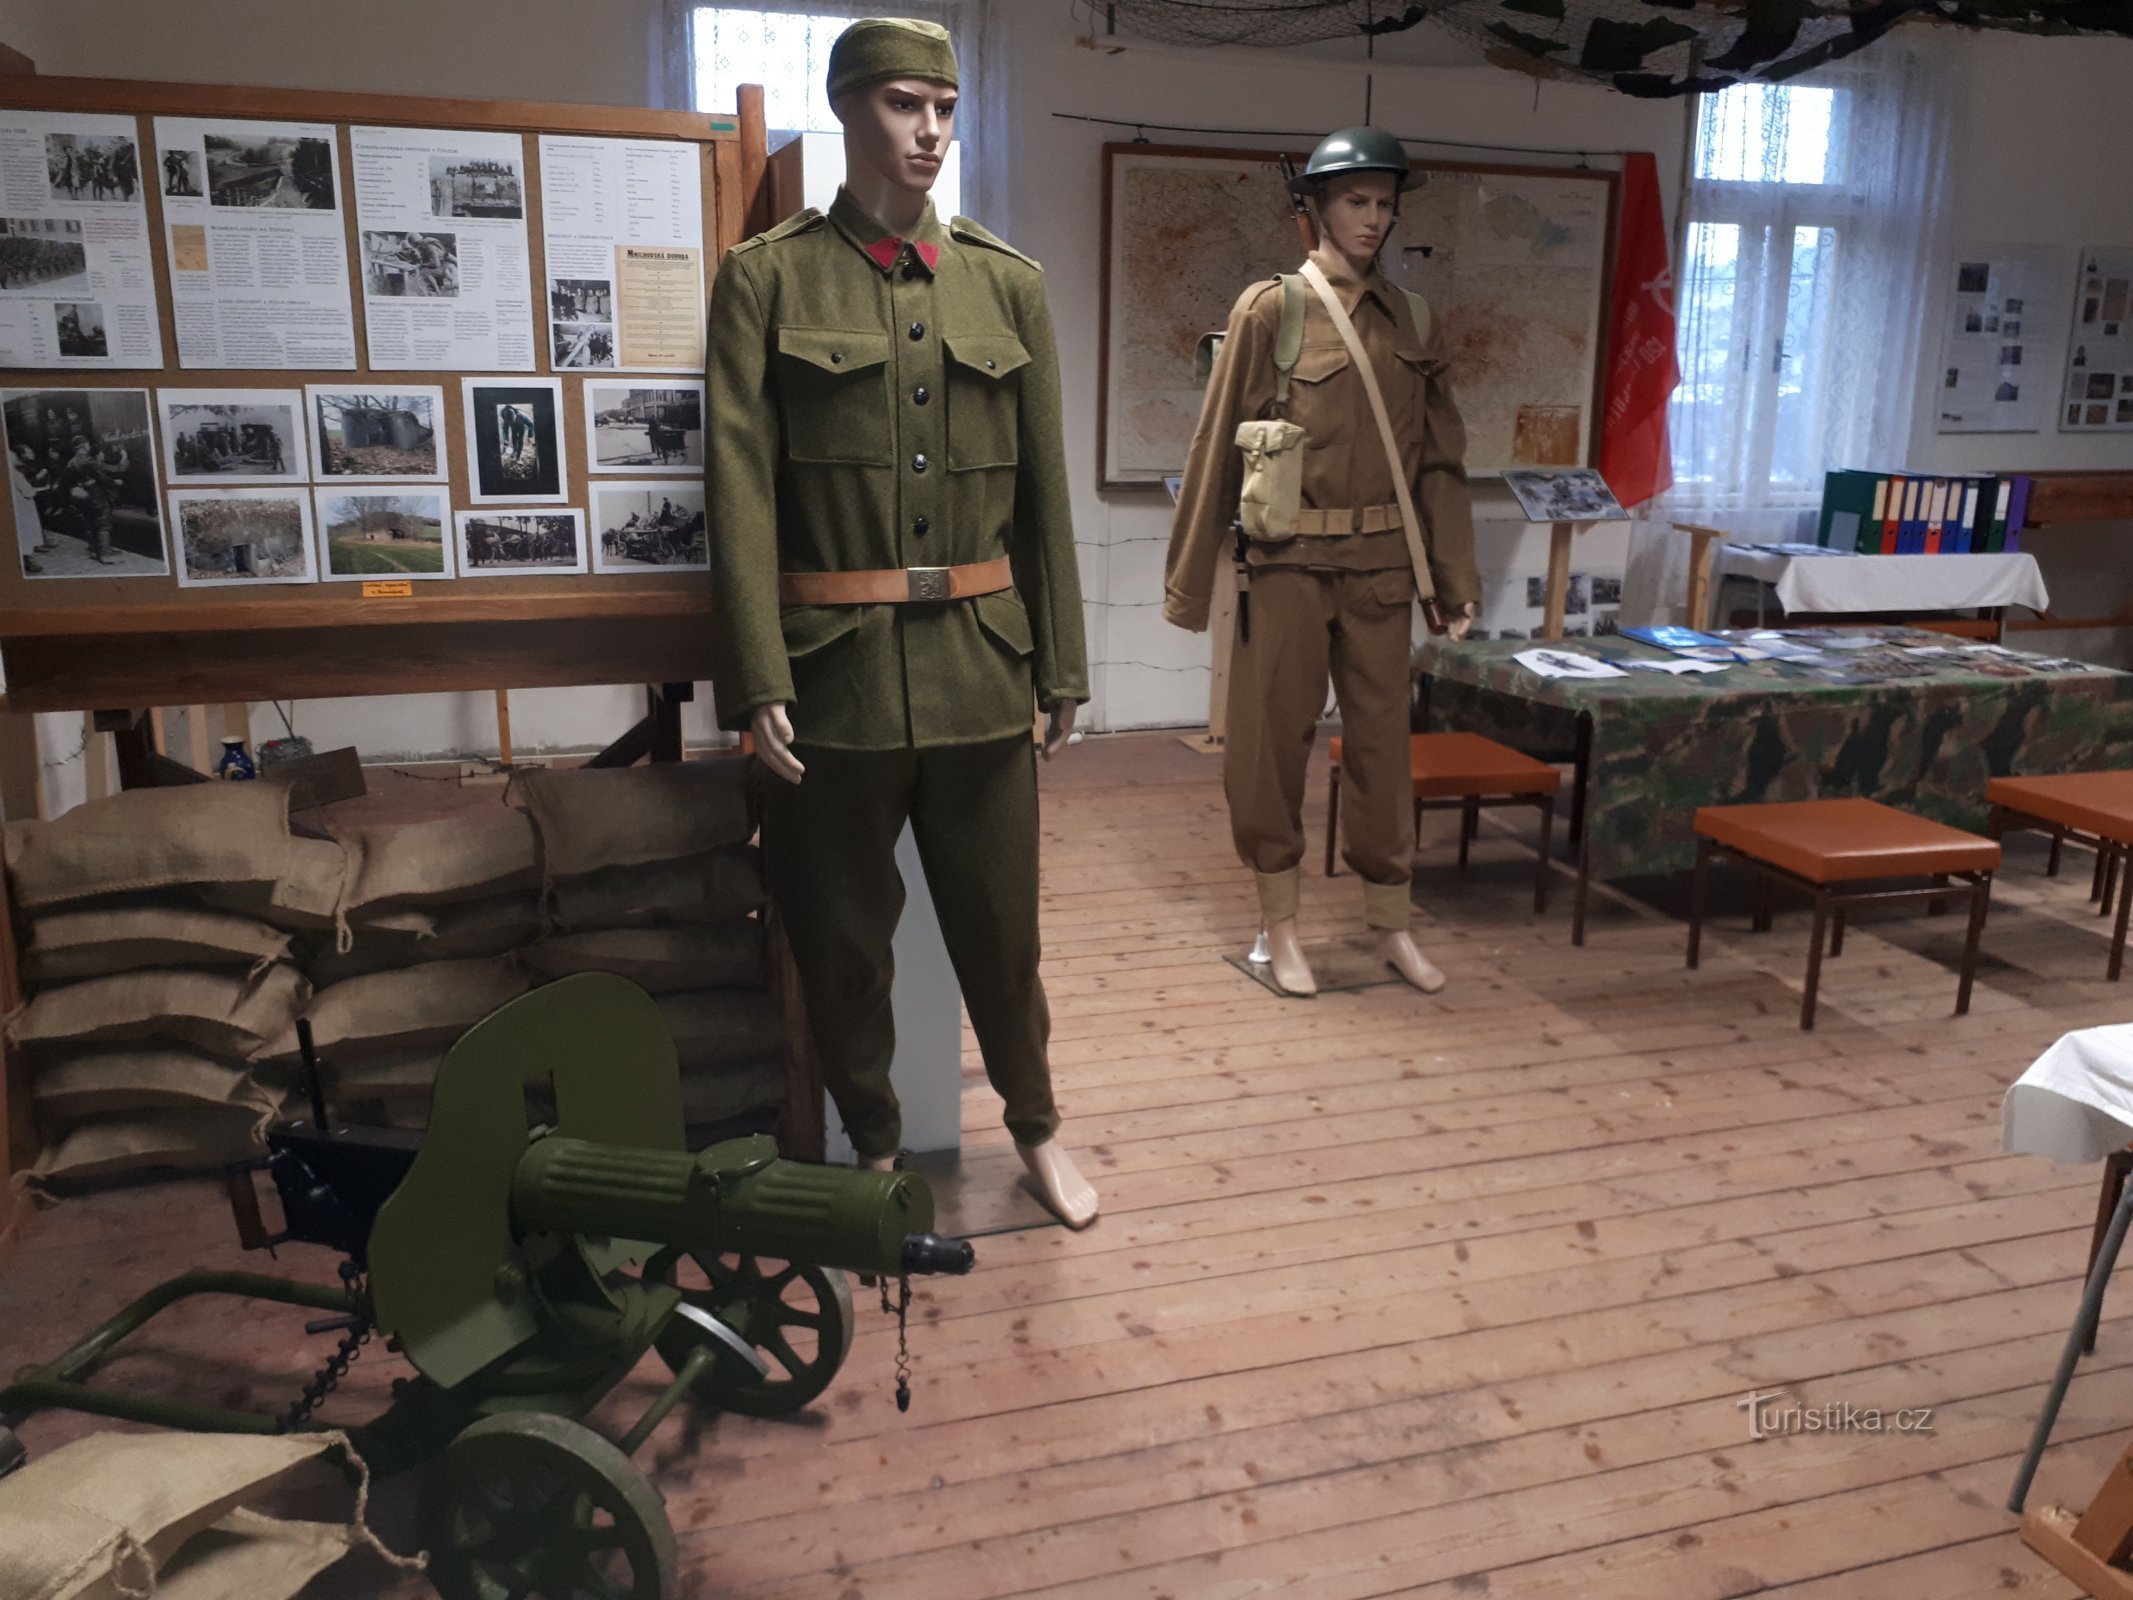 Čs. armáda 1938 a britská uniforma v období druhé světové války